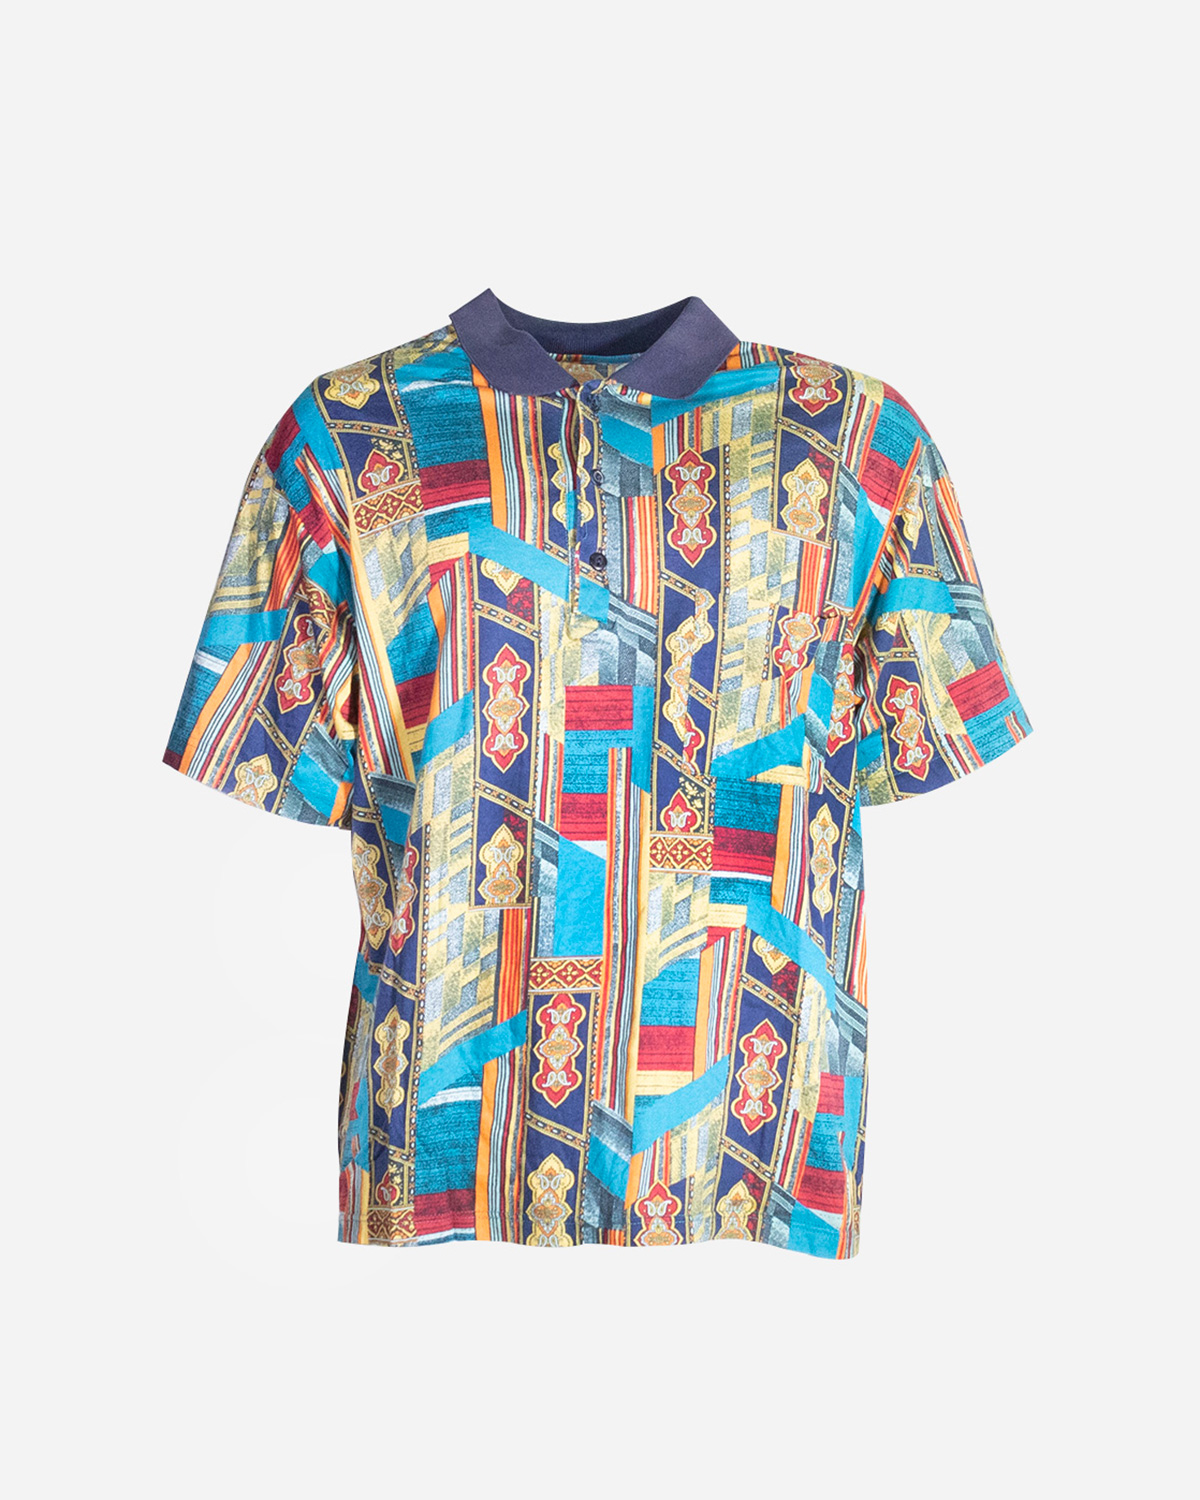 80s-90s Men’s vintage polo shirt: 4 pieces